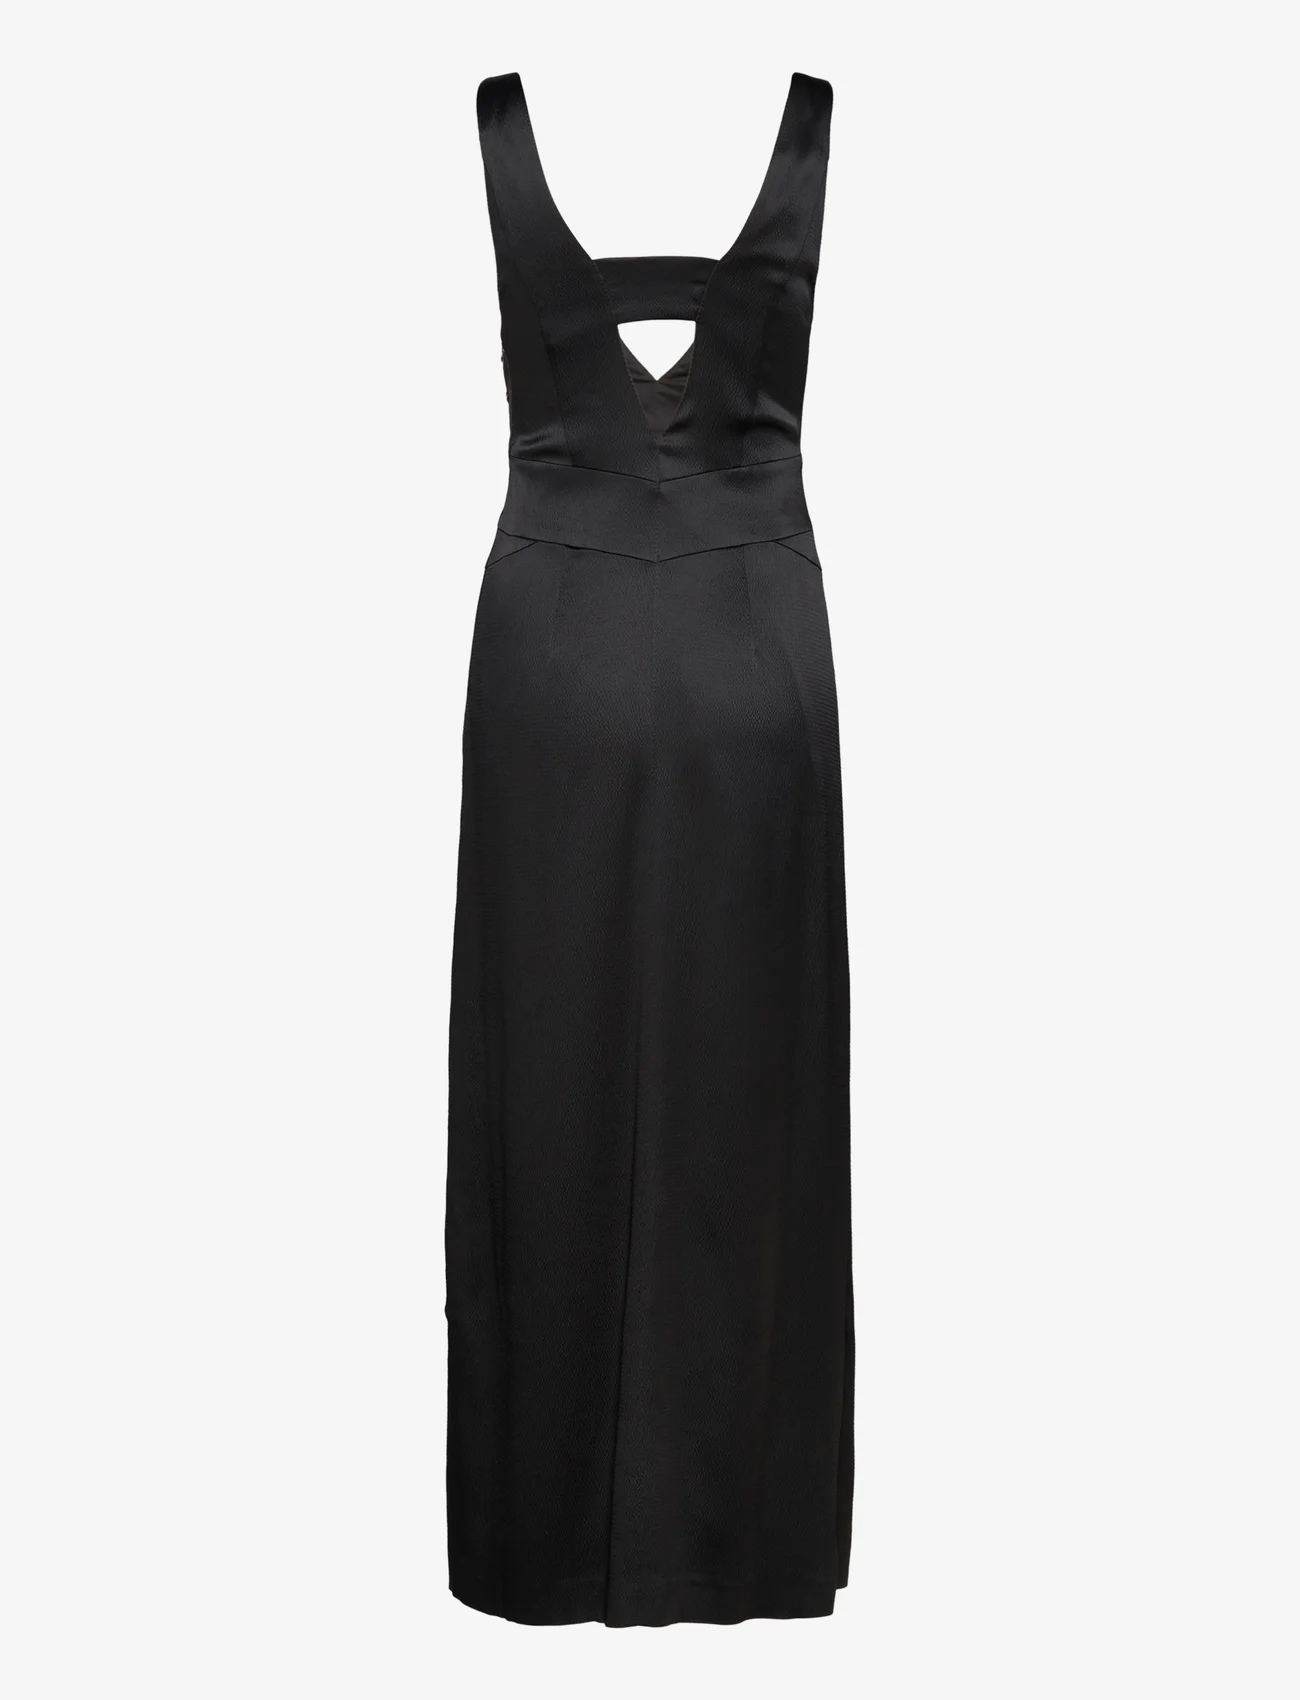 IVY OAK - Ankle Legth Strap Dress - feestelijke kleding voor outlet-prijzen - black - 1